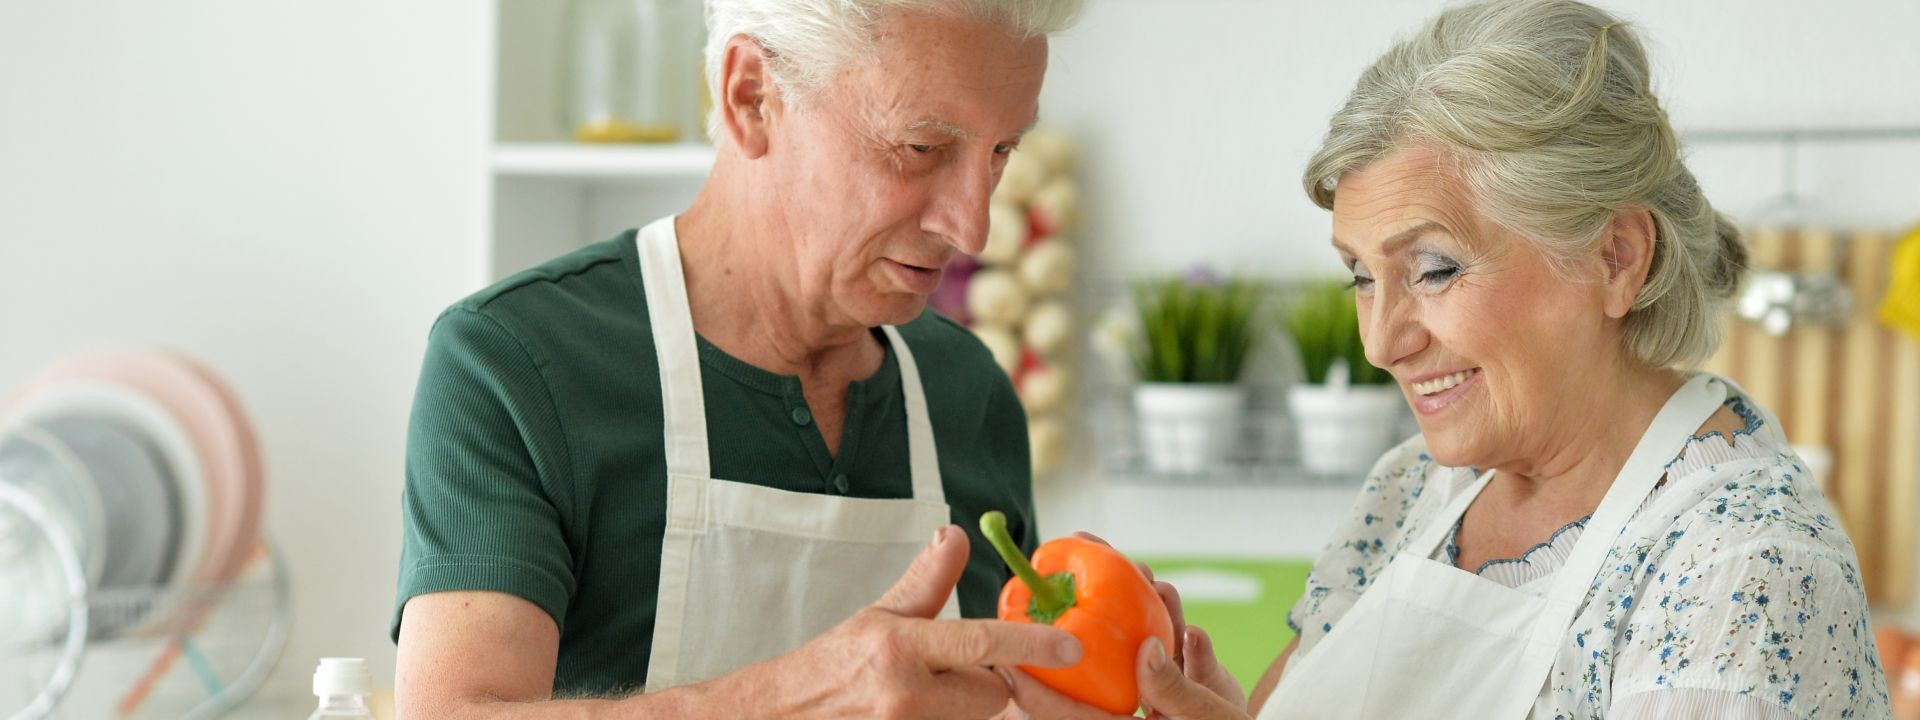 Ein Seniorenpaar steht gemeinsam in der Küche und kocht. Die Frau hält eine Paprika in der Hand. Beide lächeln.